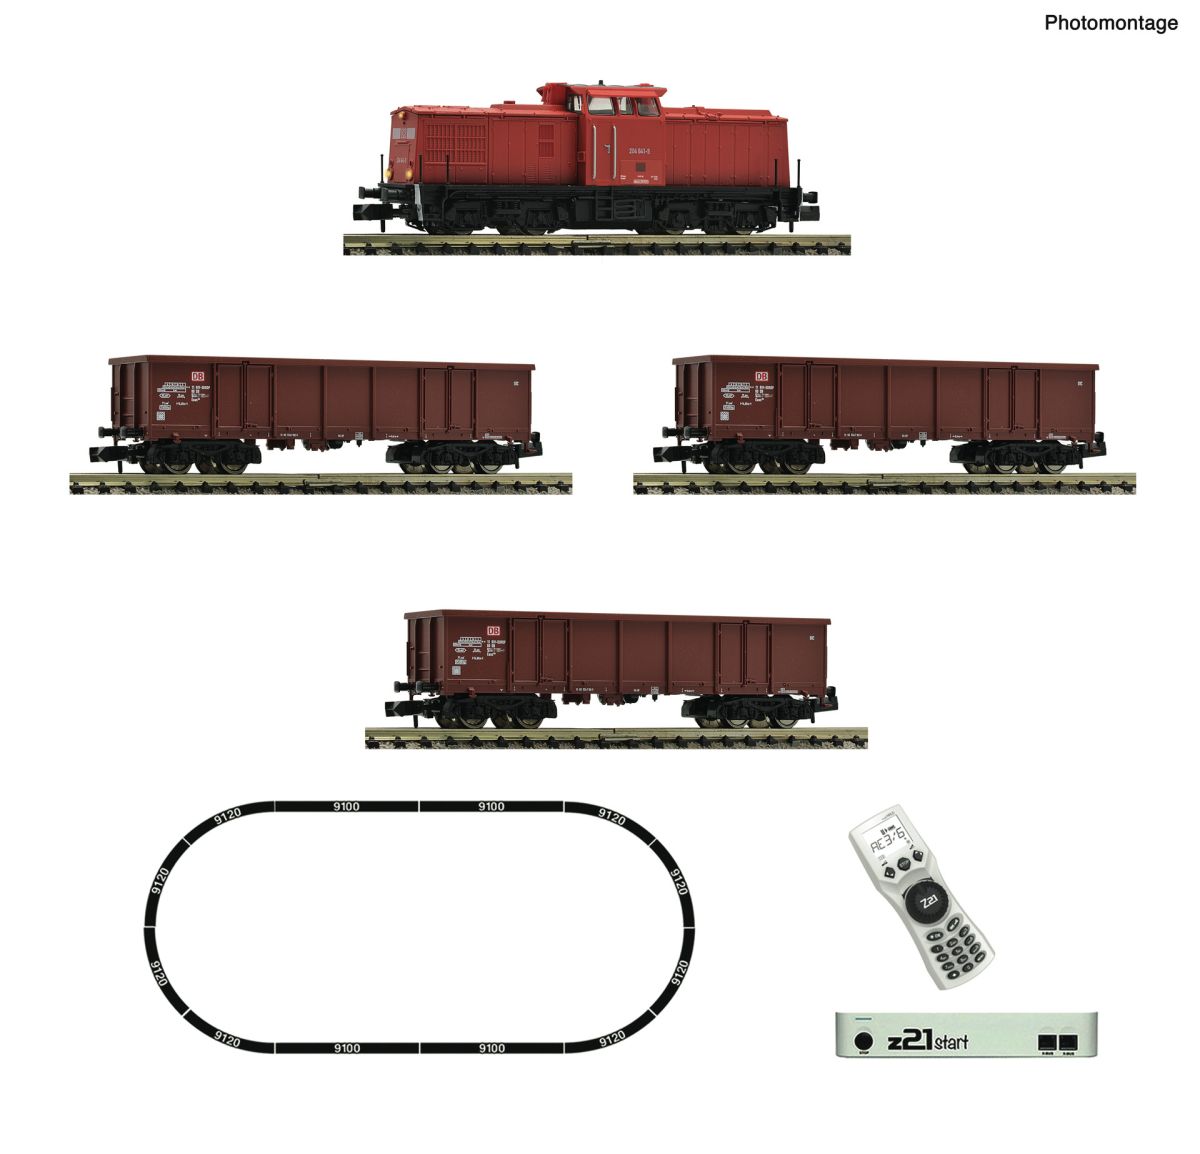 FLEISCHMANN 5170005 z21 start Digitalset: Diesellokomotive BR 204 mit Güterzug, DB AG DCC Spur N